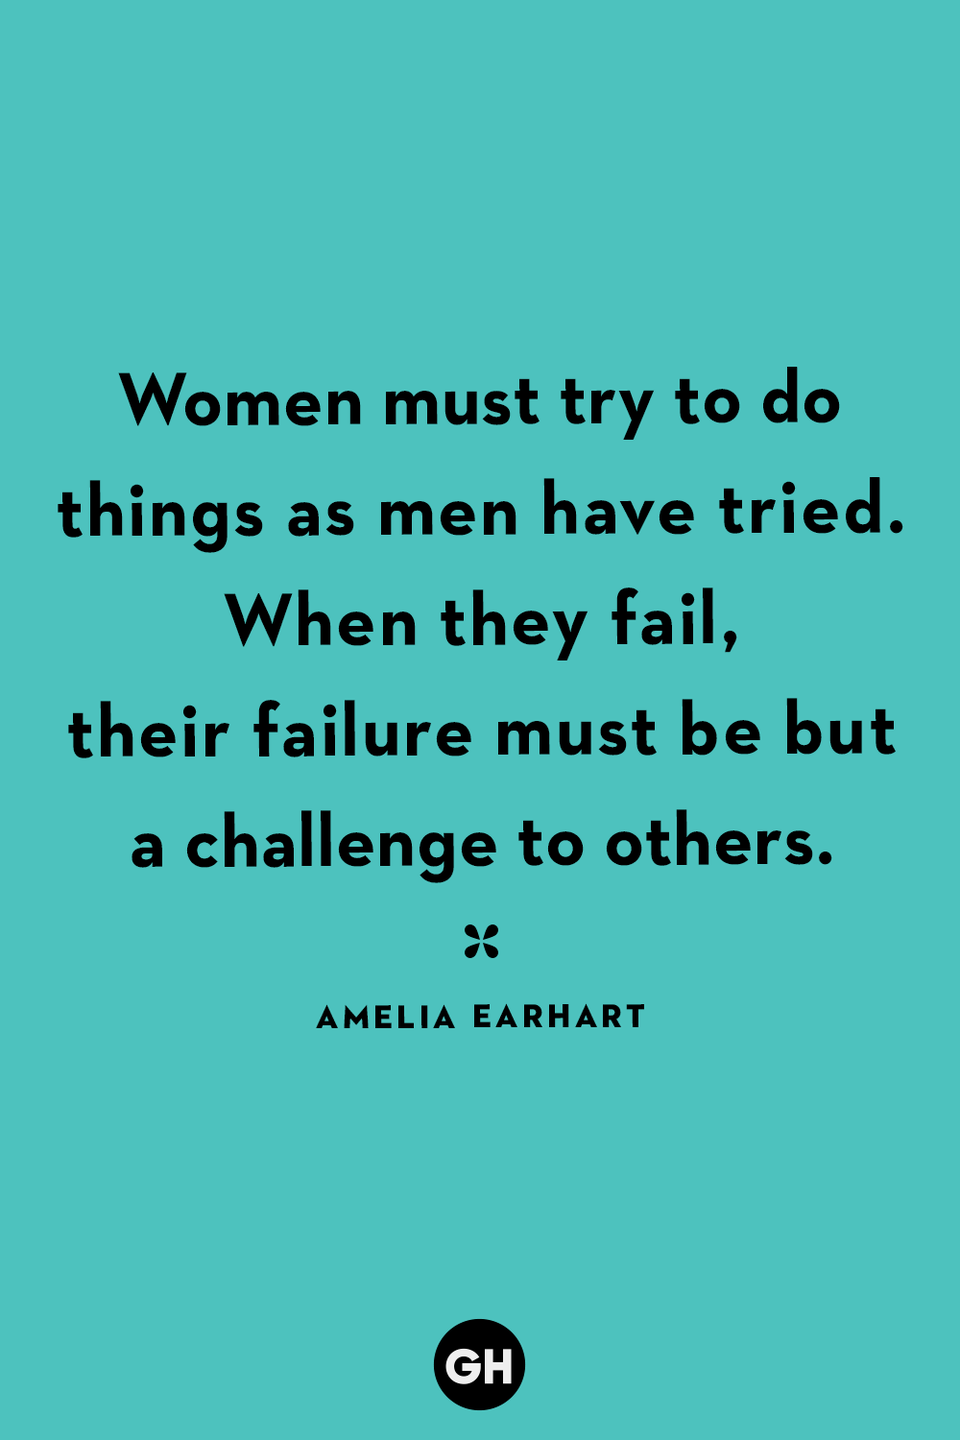 9) Amelia Earhart